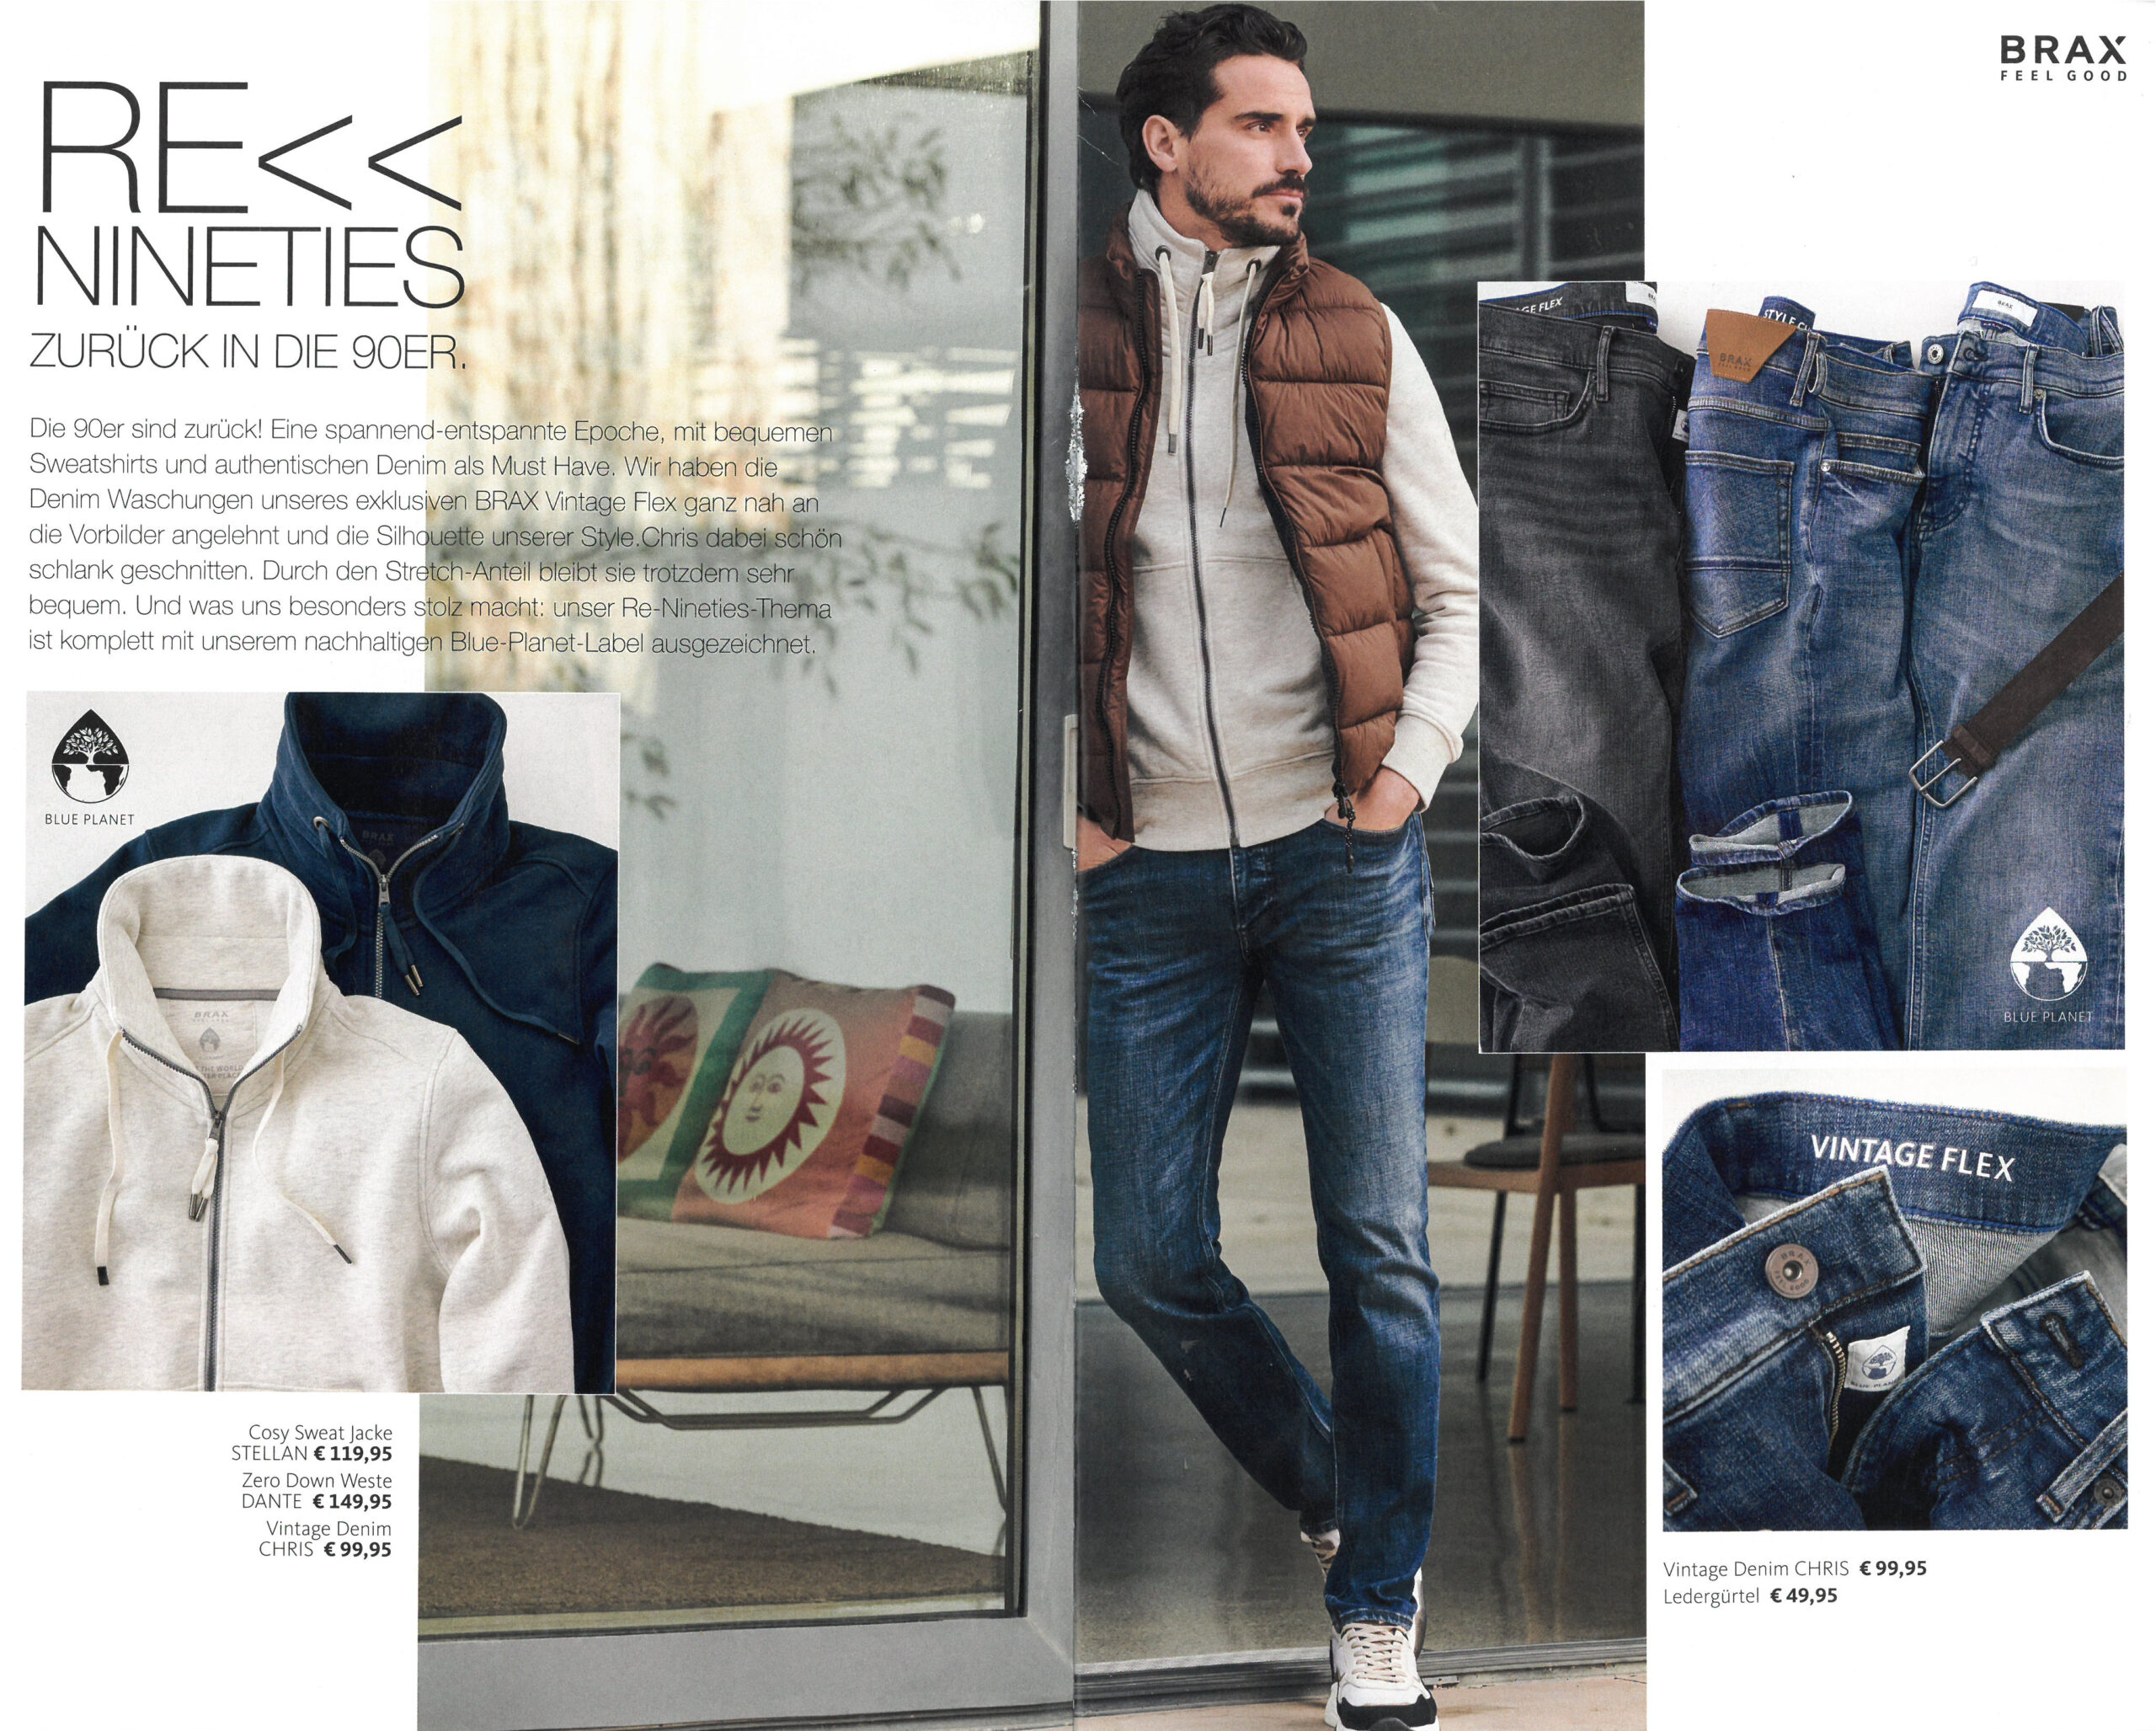 BRAX Prospekt Herbst / Winter 2022 November - Seite 5 - Hartmann Mode Shop